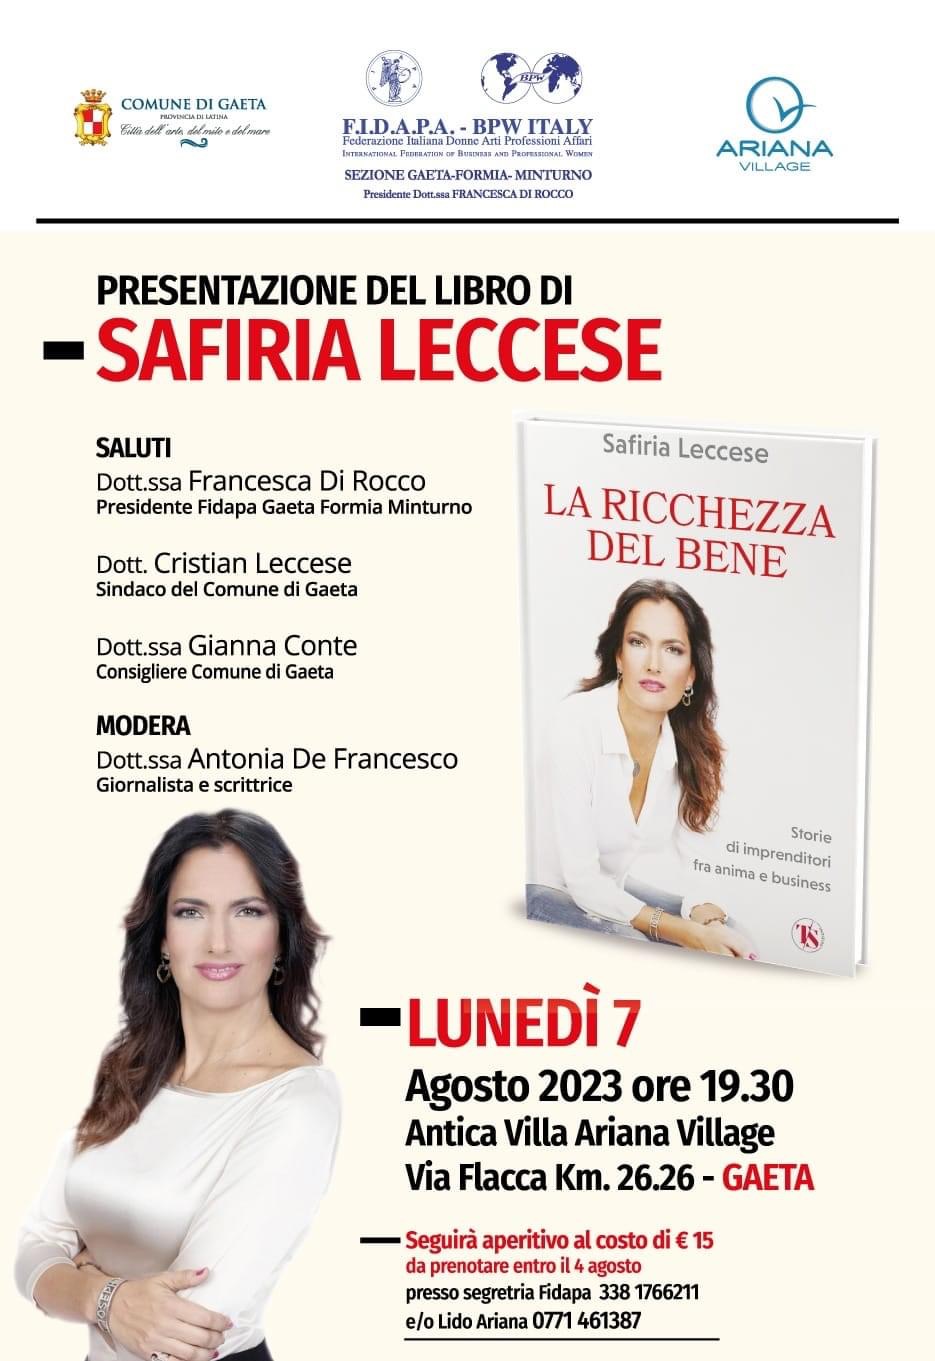 "La ricchezza del bene", lunedì 7 agosto la presentazione dell'ultima opera di Safiria Leccese 